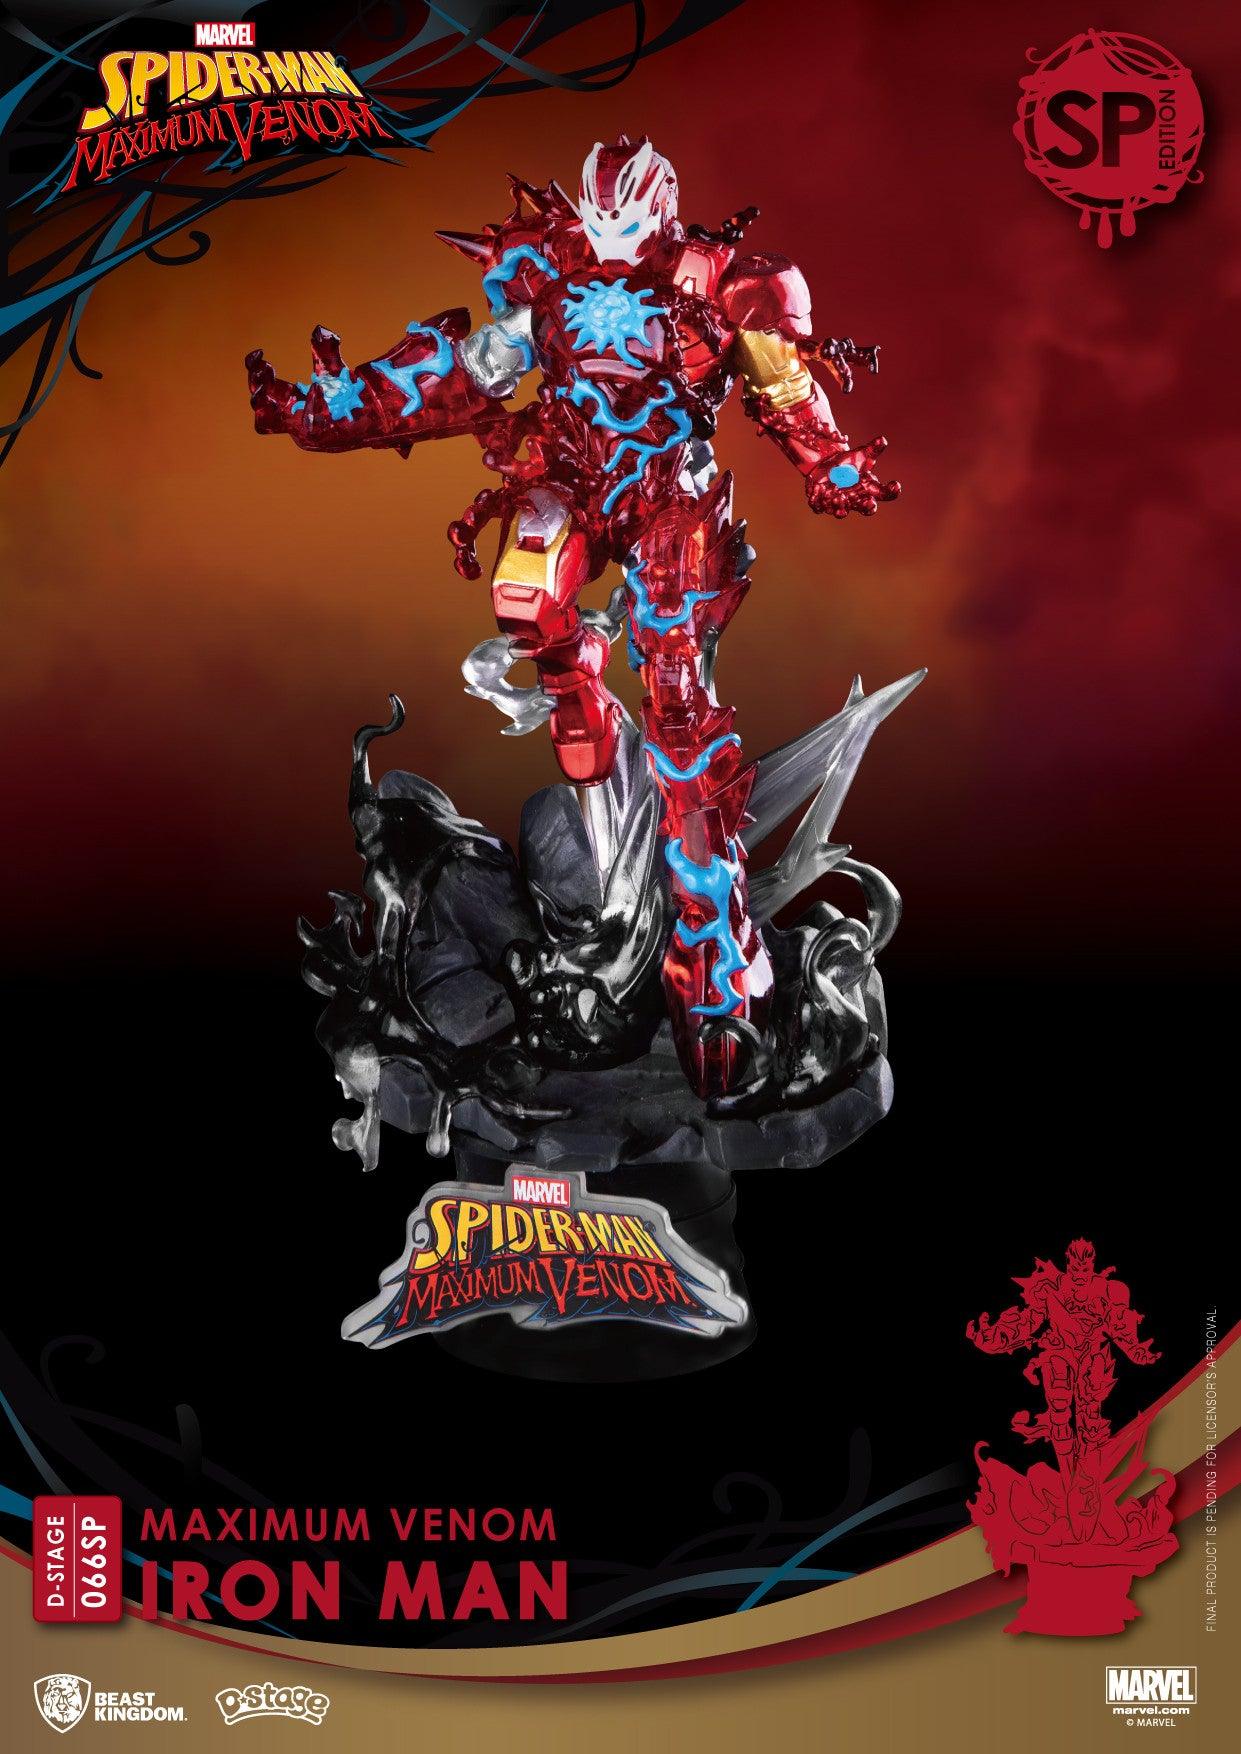 VR-93323 Beast Kingdom D Stage Maximum Venom Iron Man Special Edition - Beast Kingdom - Titan Pop Culture